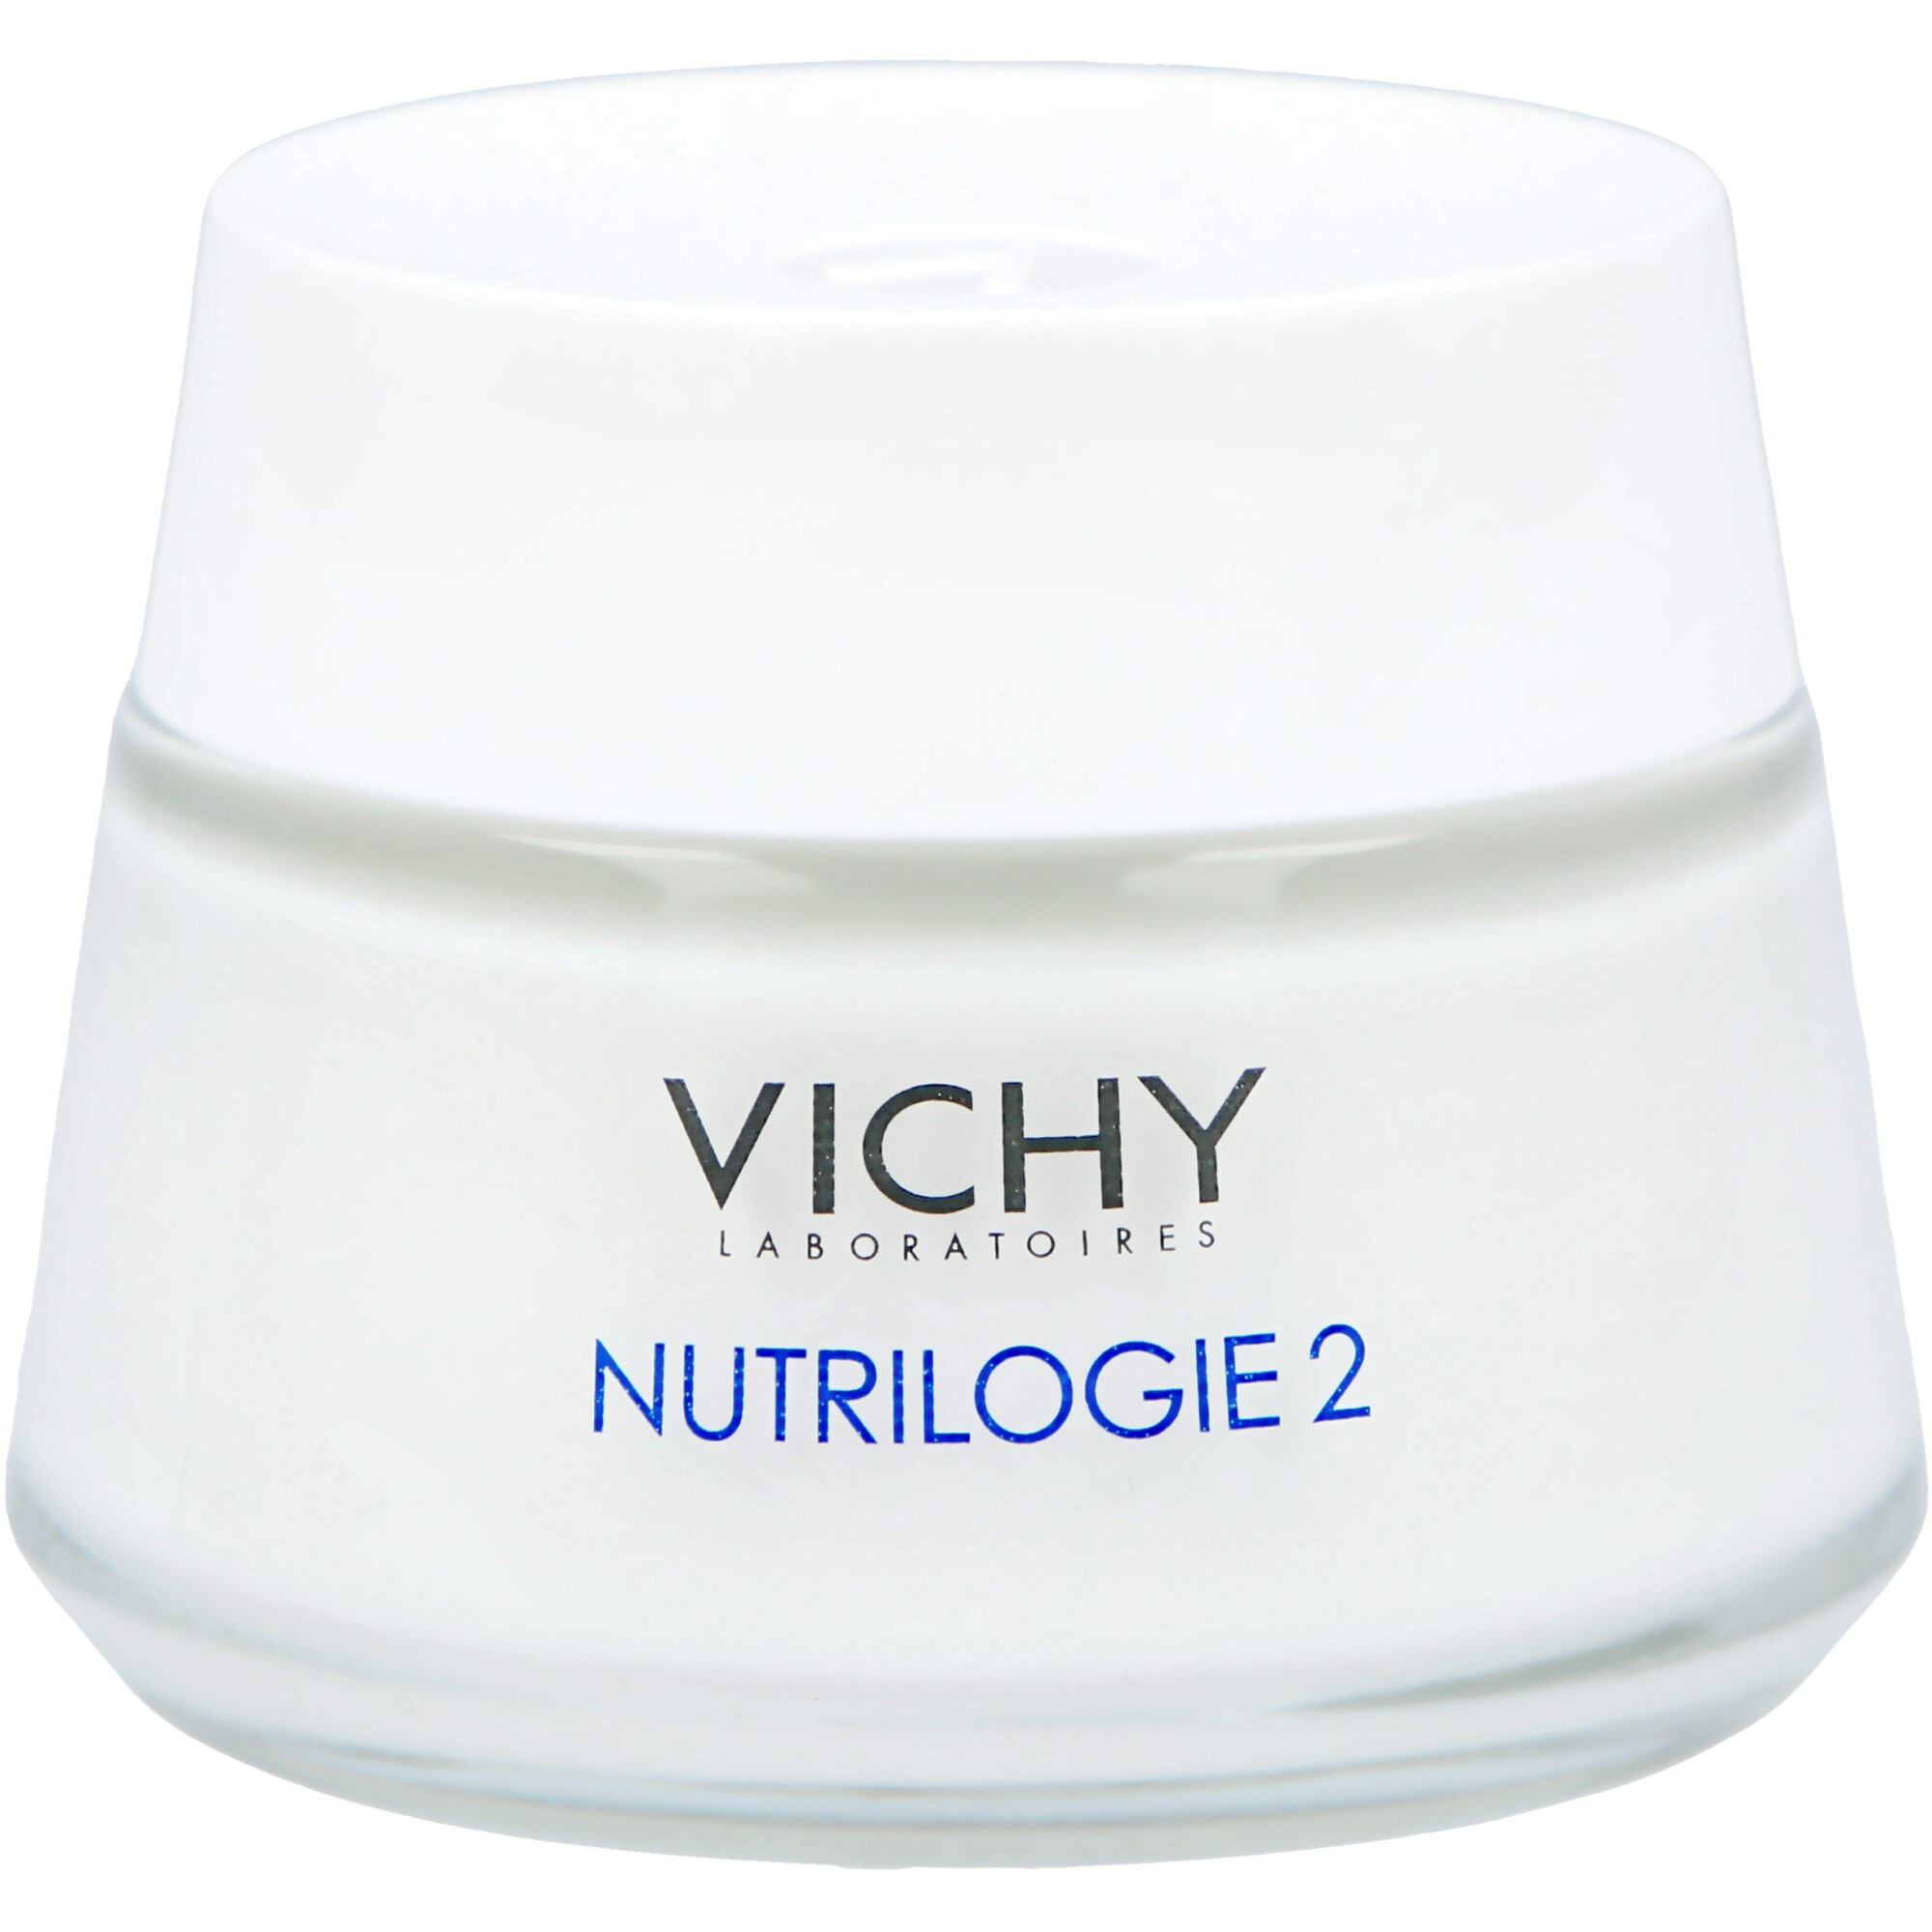 Bilde av Vichy Nutrilogie 2 Face Cream 50 Ml